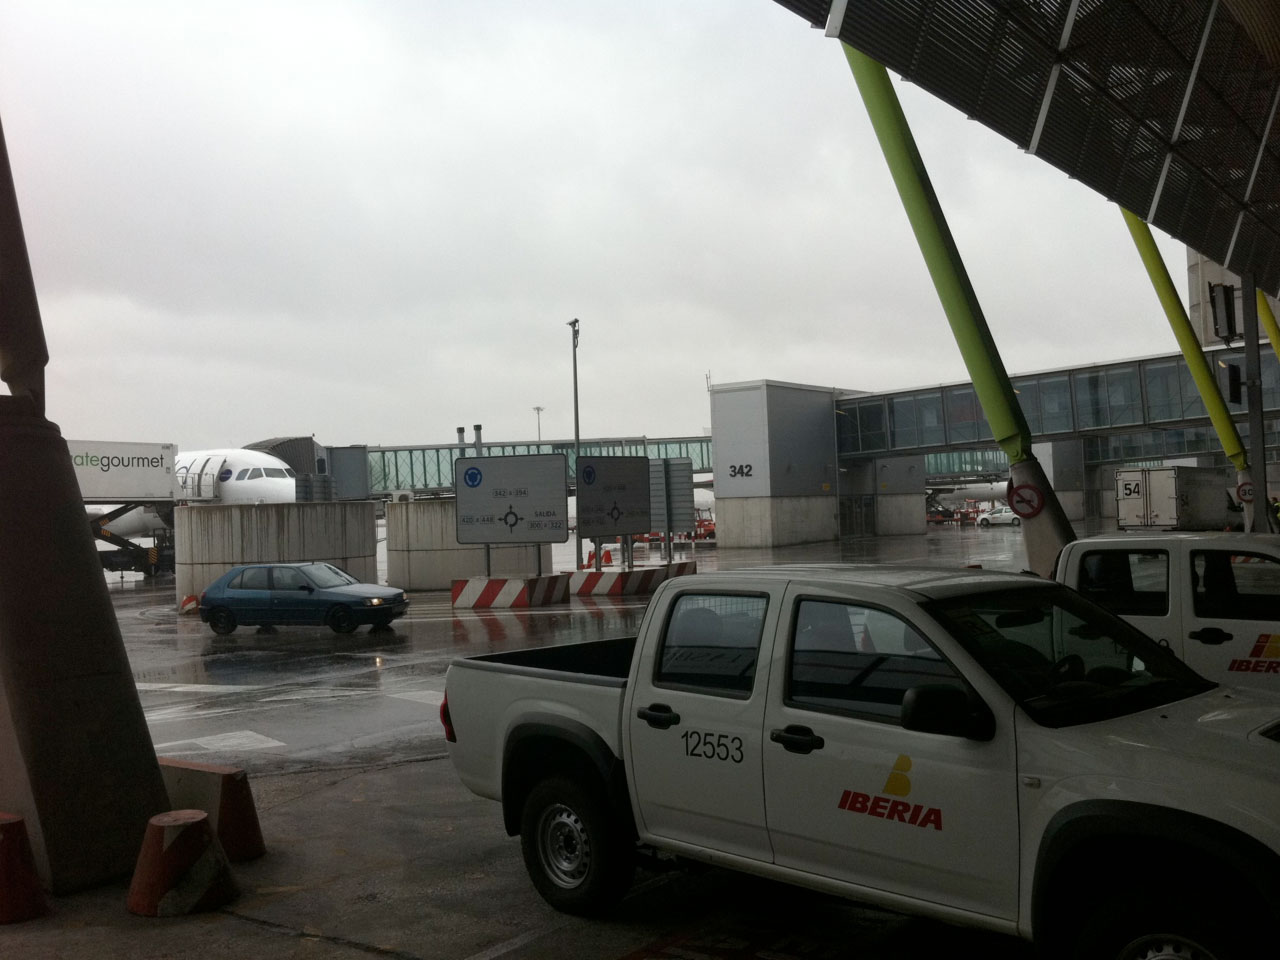 Servicios de mantenimiento integrral del Aeropuerto de Madrid Barajas